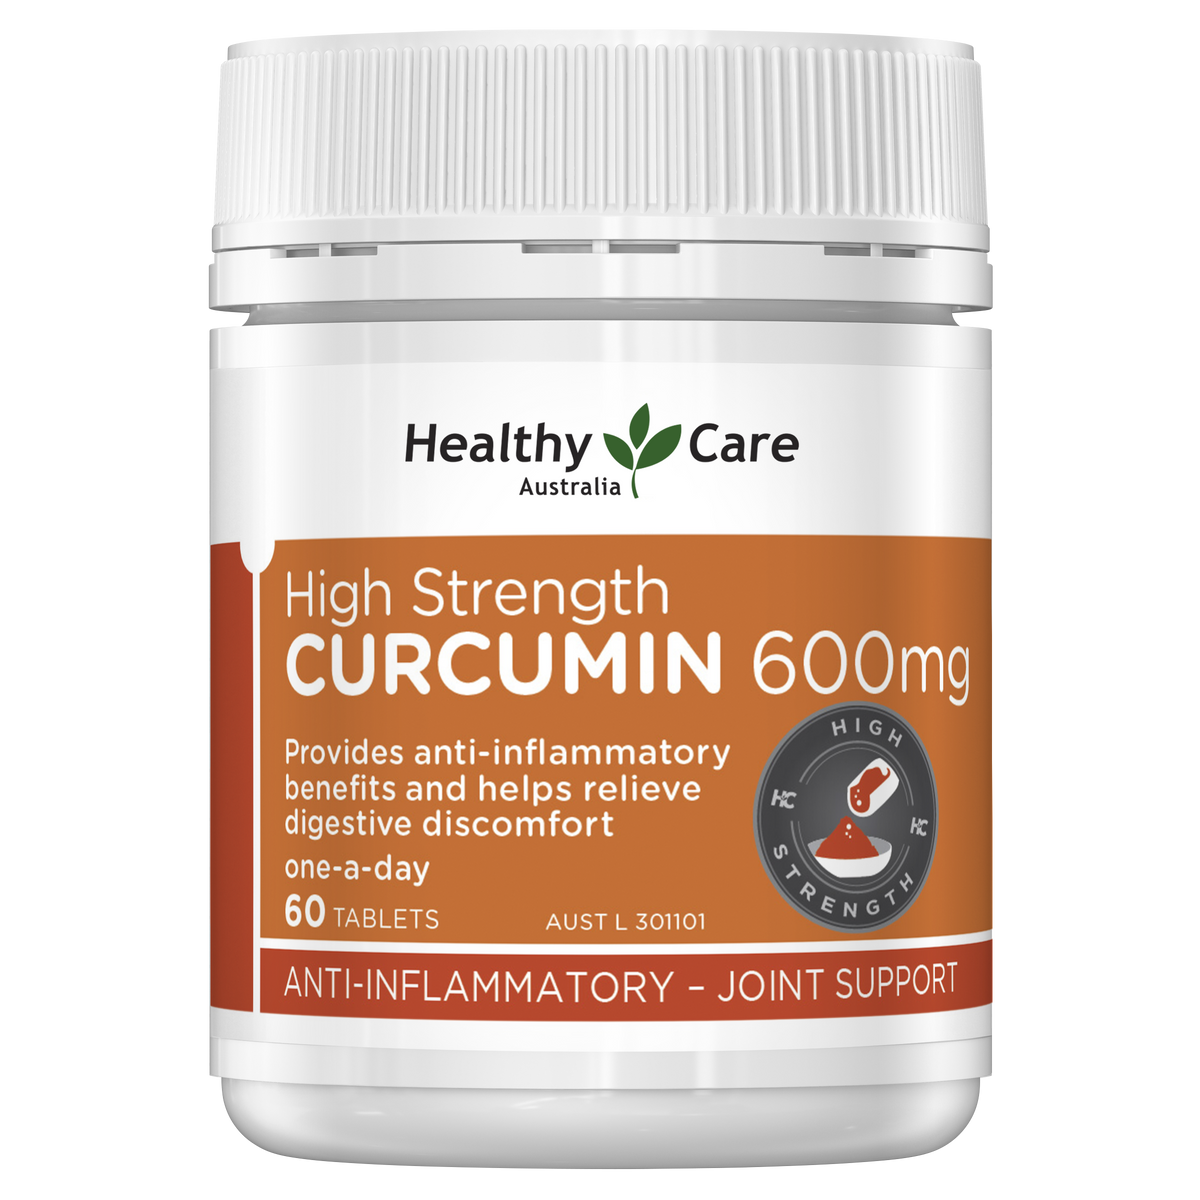 Healthy Care High Strength Curcumin 600mg 60 Tablets